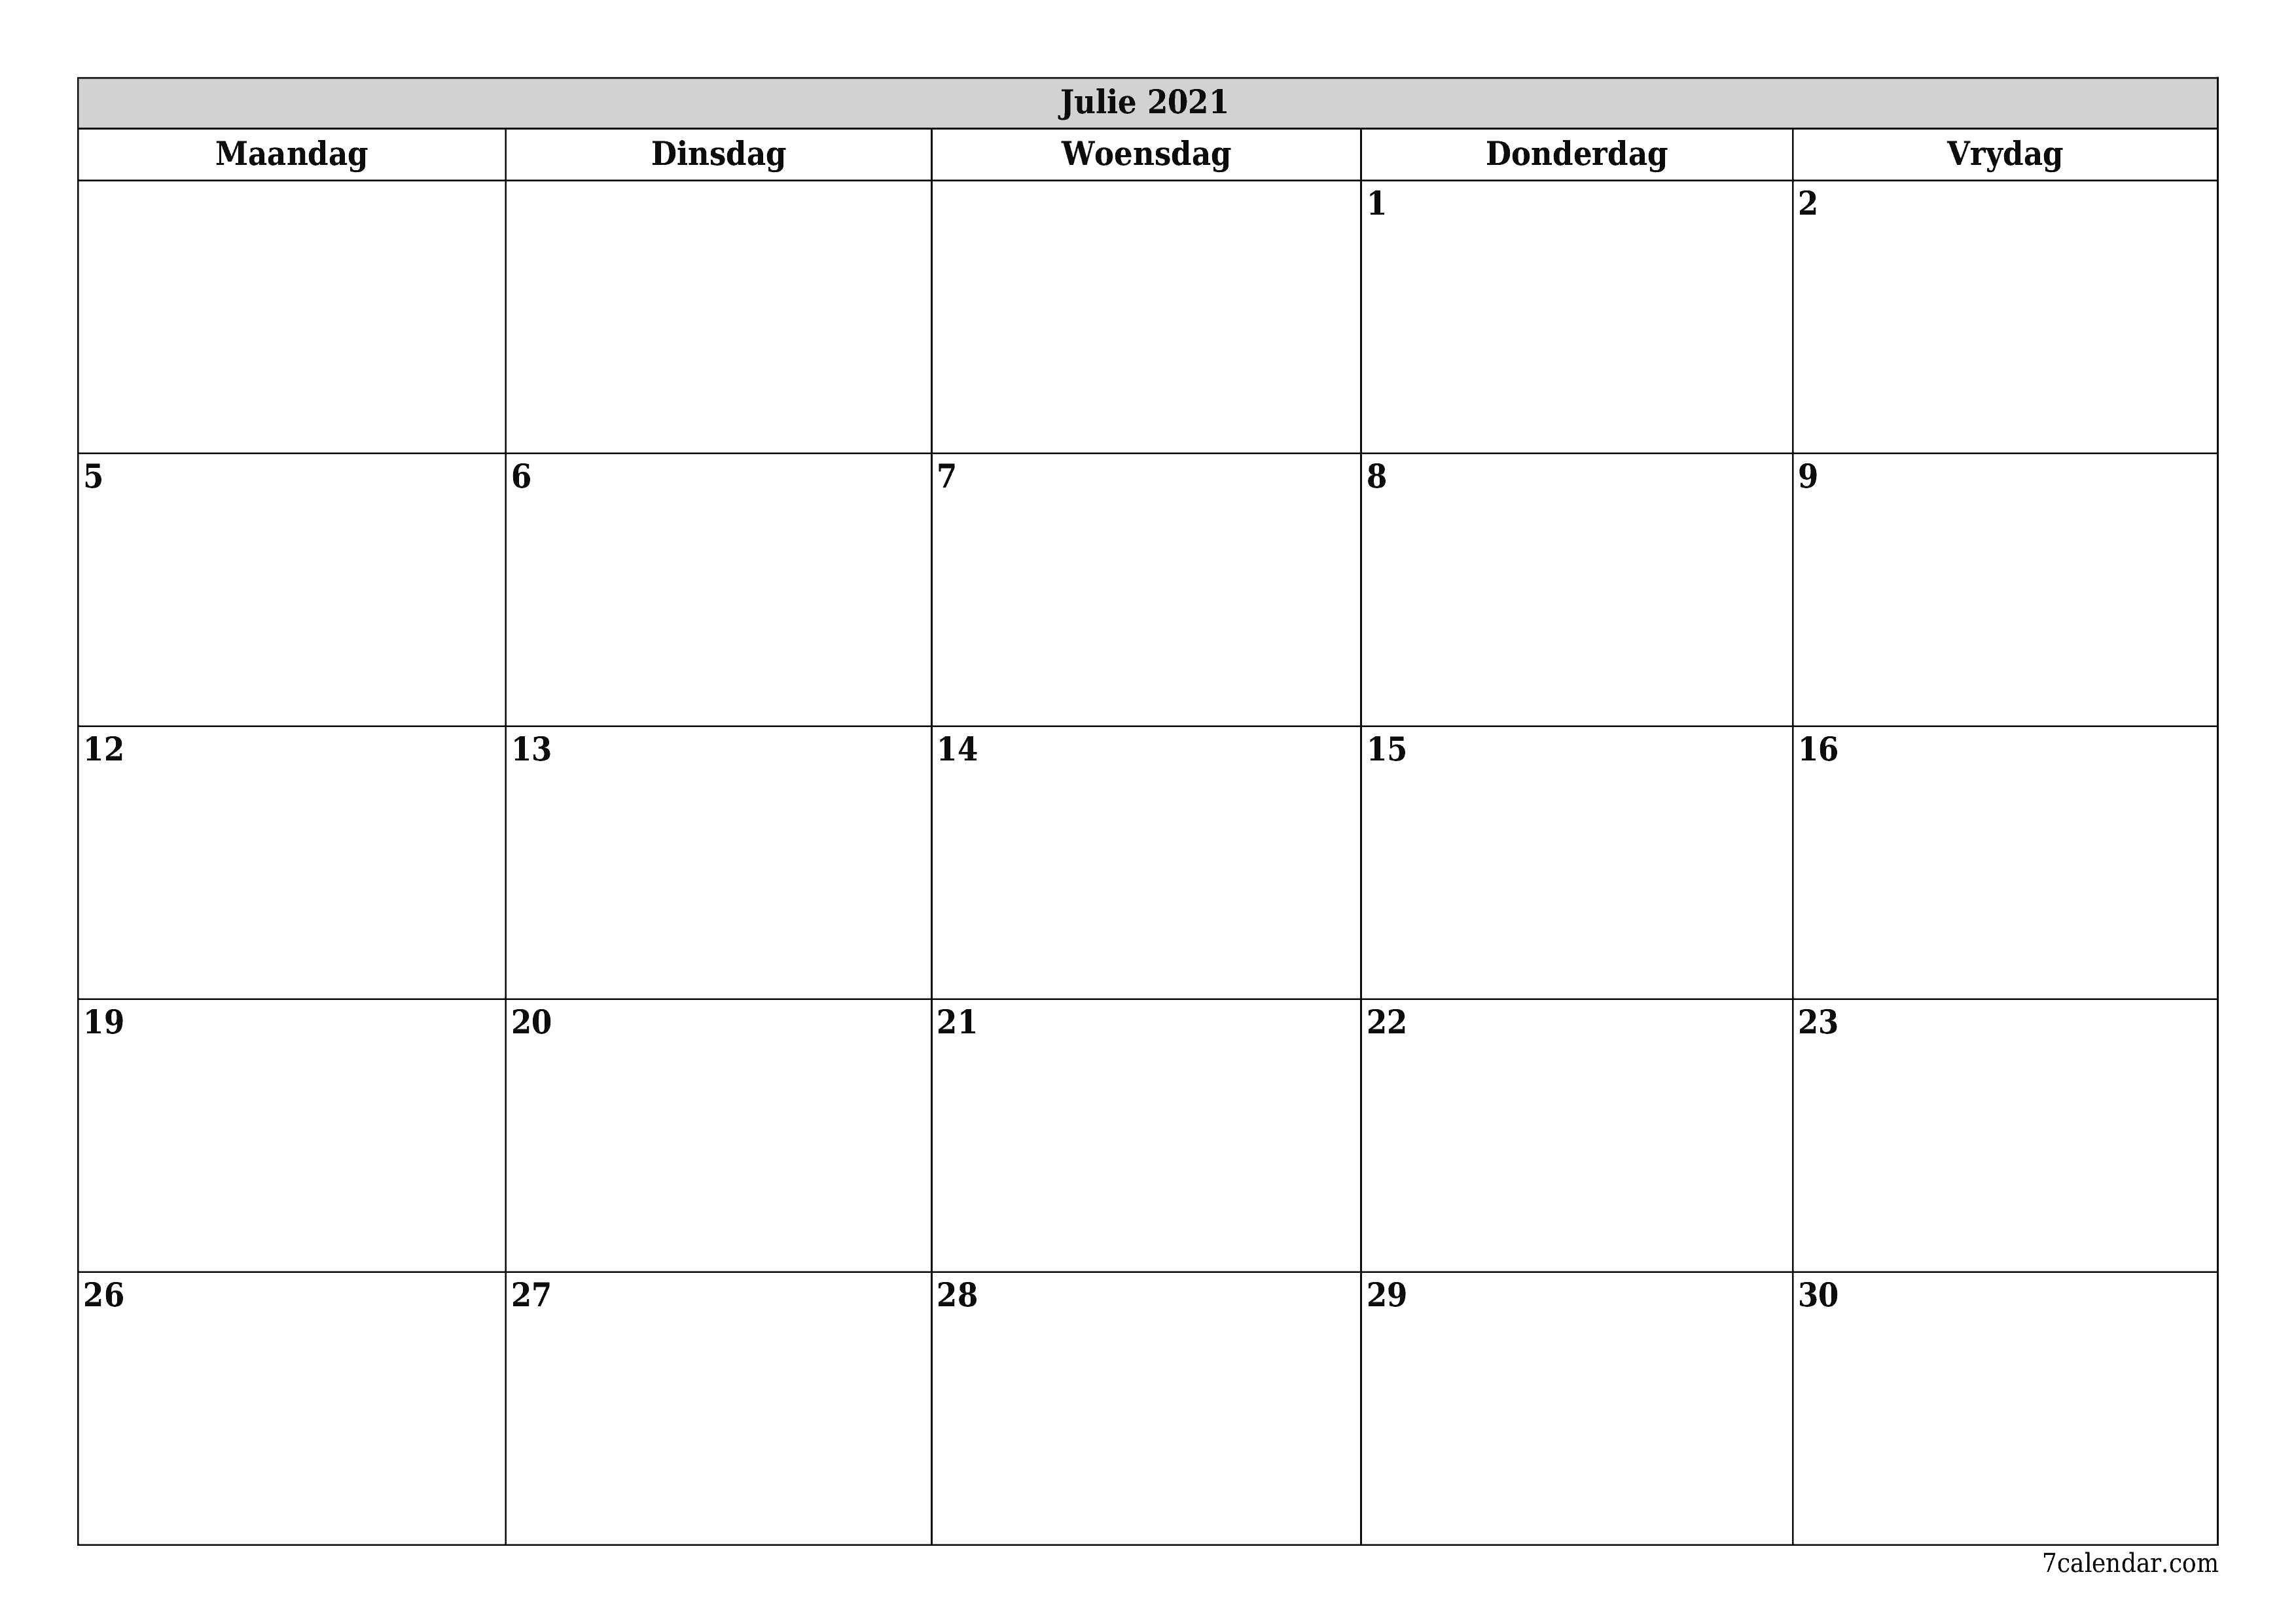 Leë maandelikse drukbare kalender en beplanner vir maand Julie 2021 met notas stoor en druk na PDF PNG Afrikaans